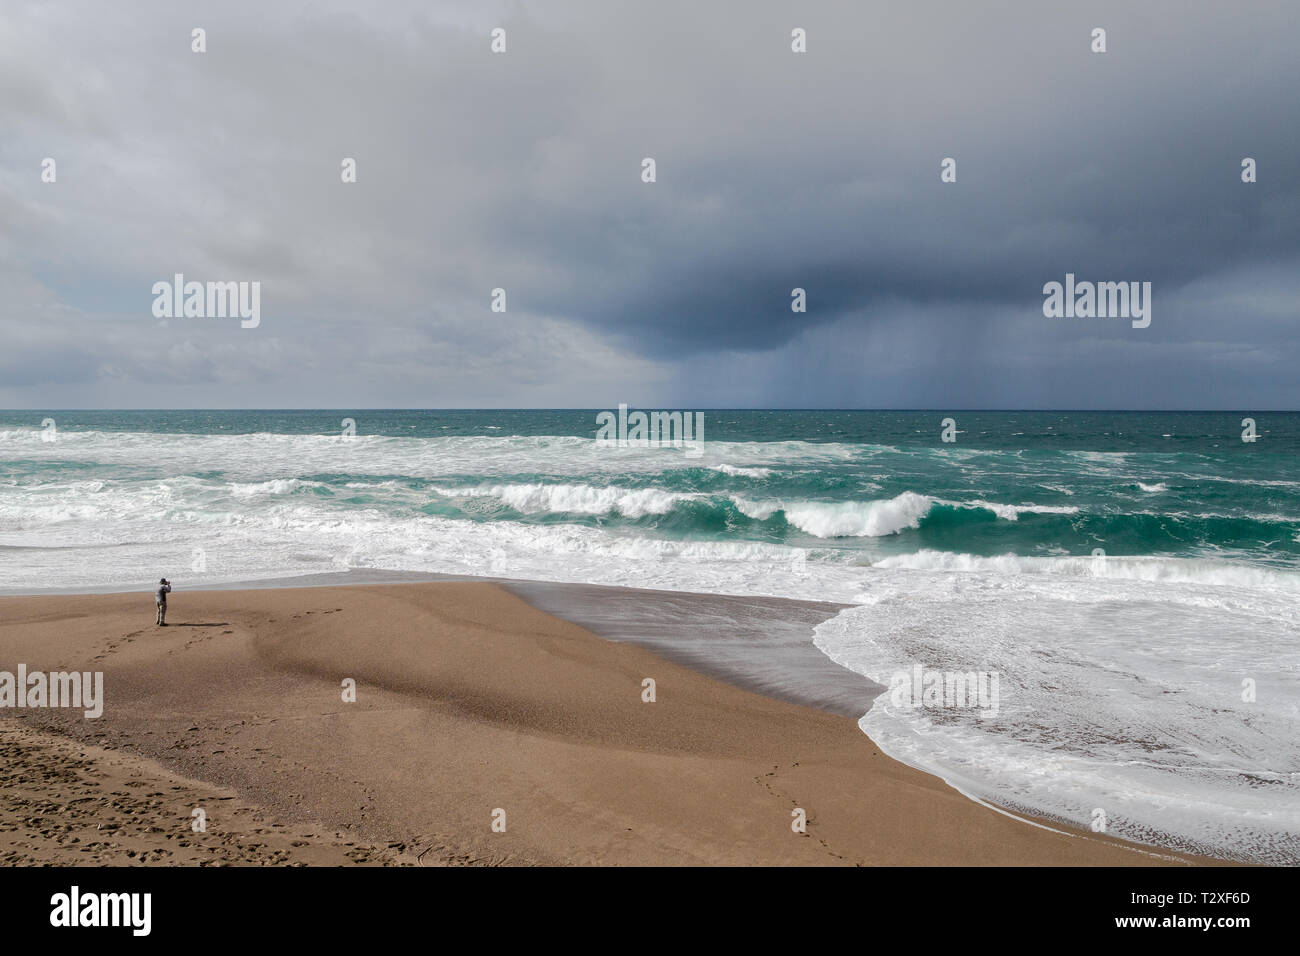 Ein Fotograf sieht klein im Vergleich zu den stürmischen Meer und tristen Regen Wolken an der nördlichen Küste von Kalifornien. Stockfoto